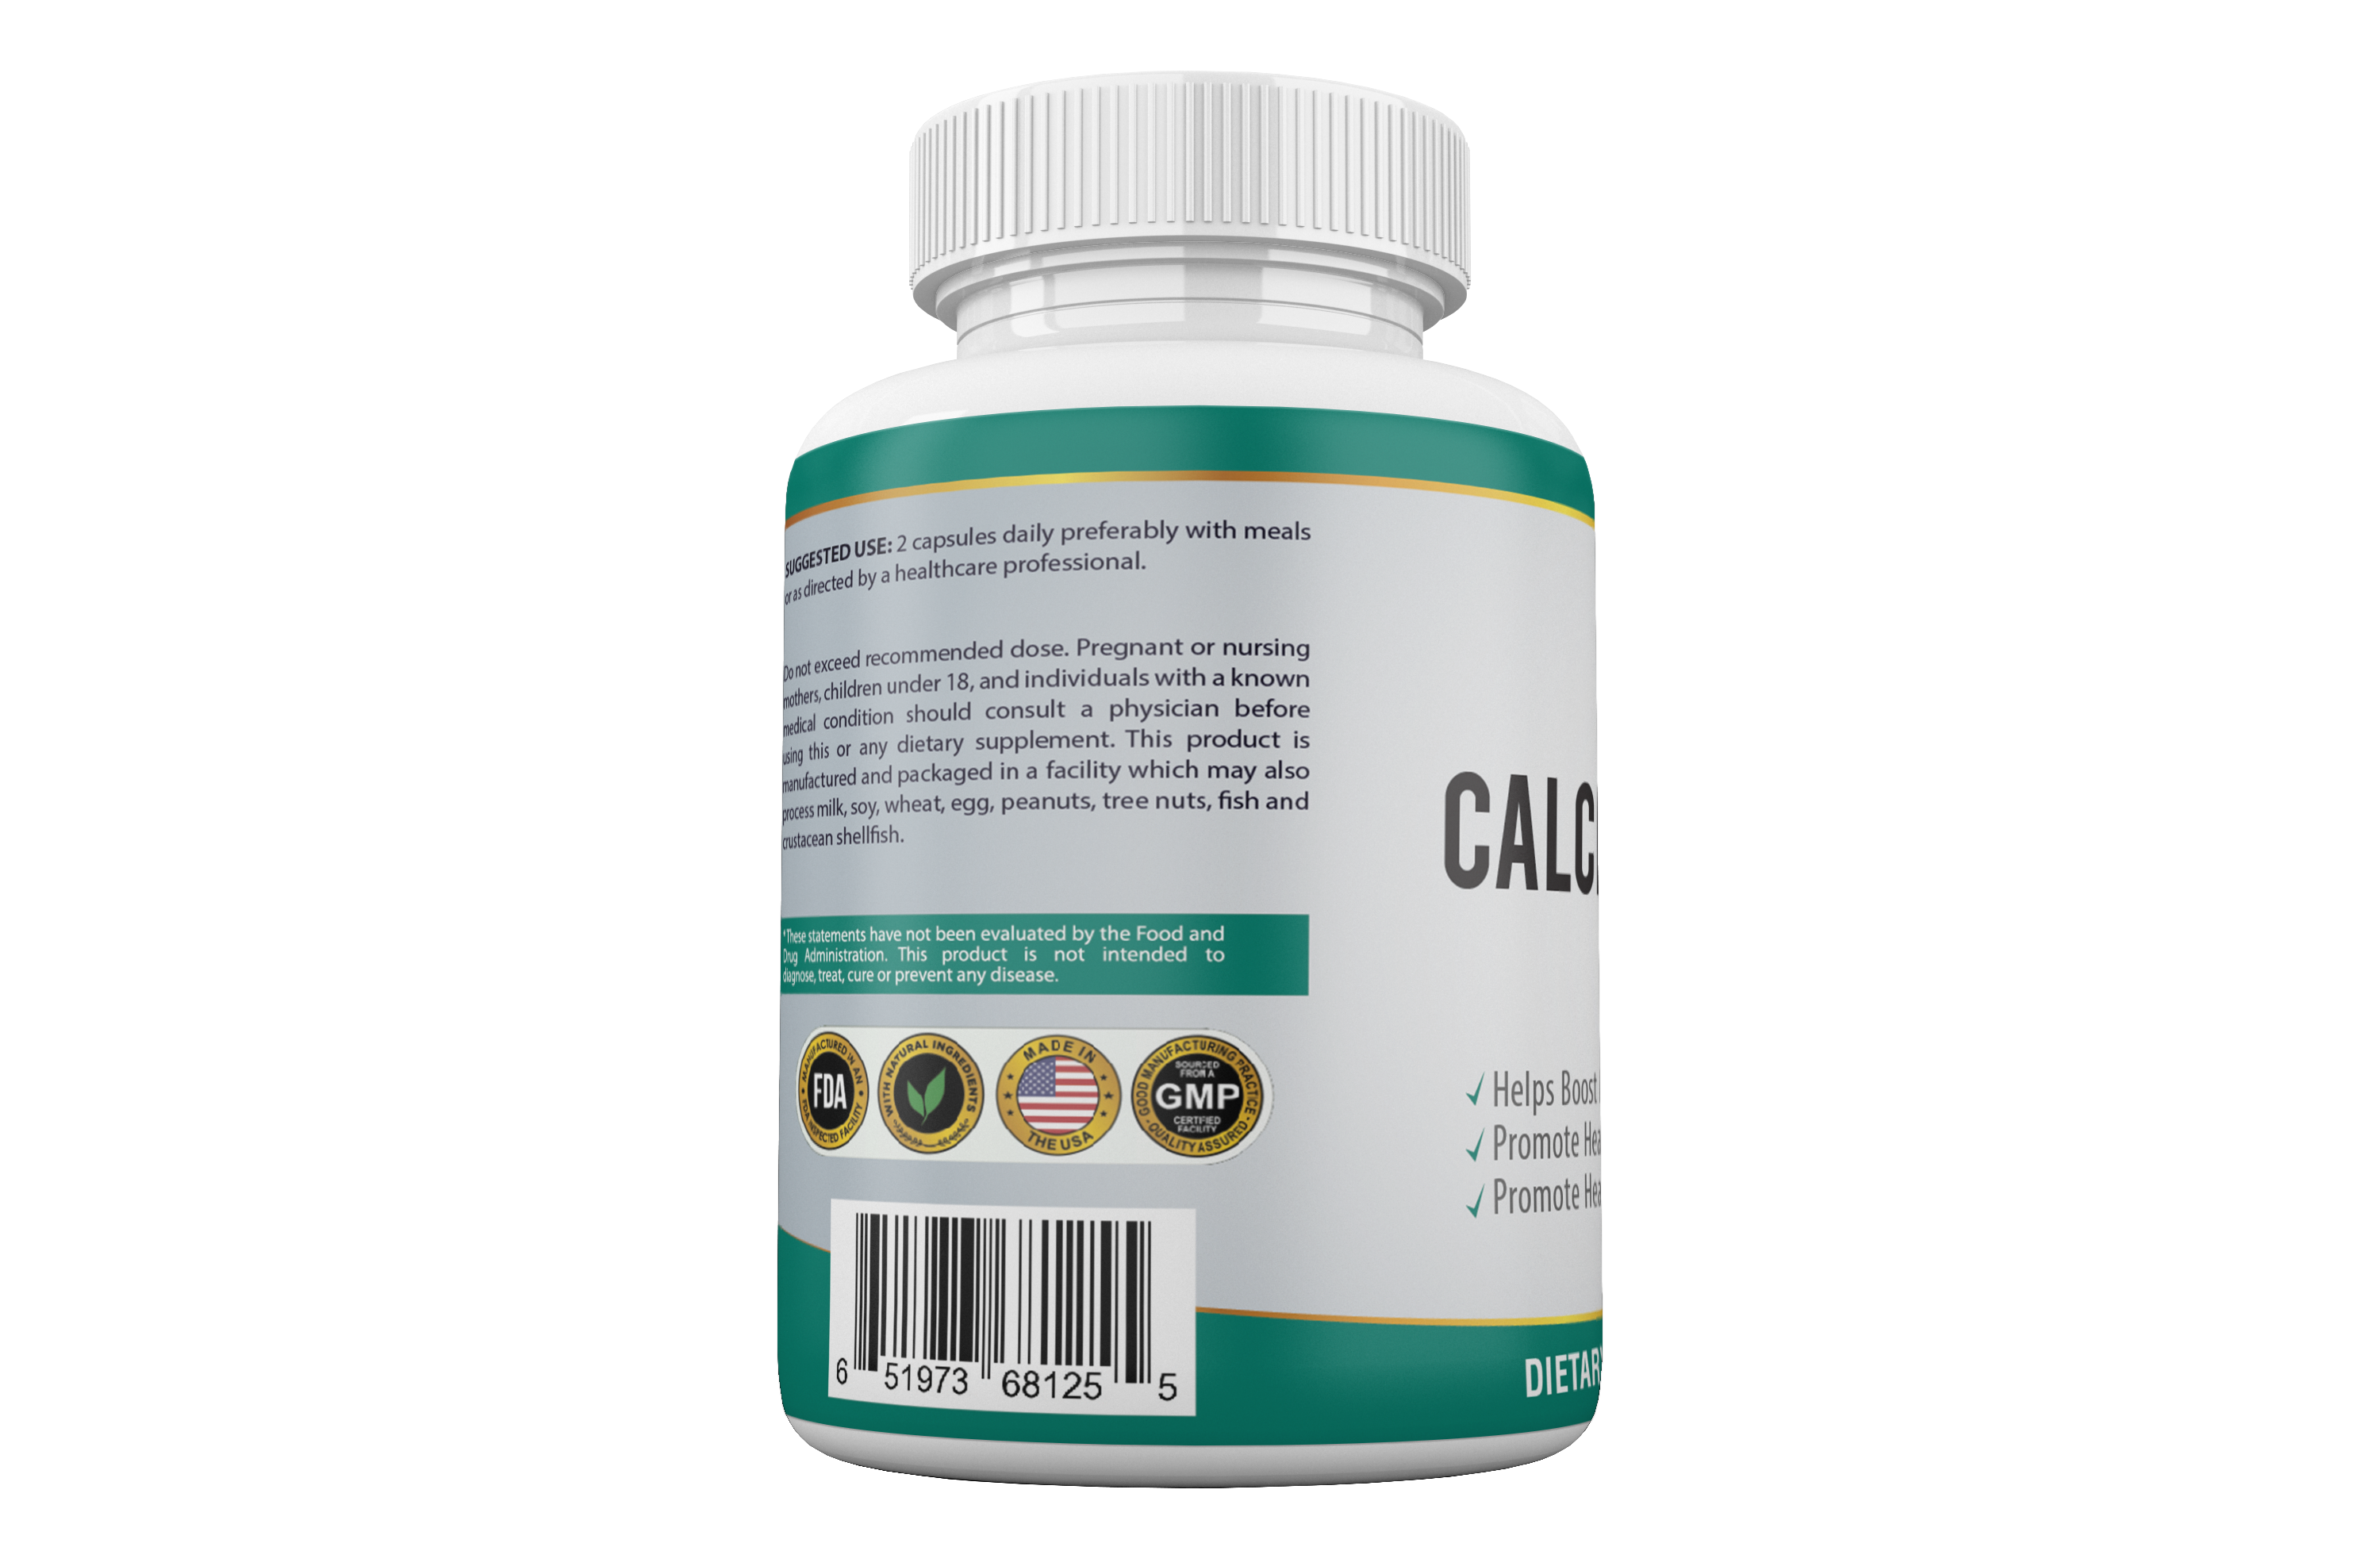 QIH37: Calcium Pyruvate Pro Health